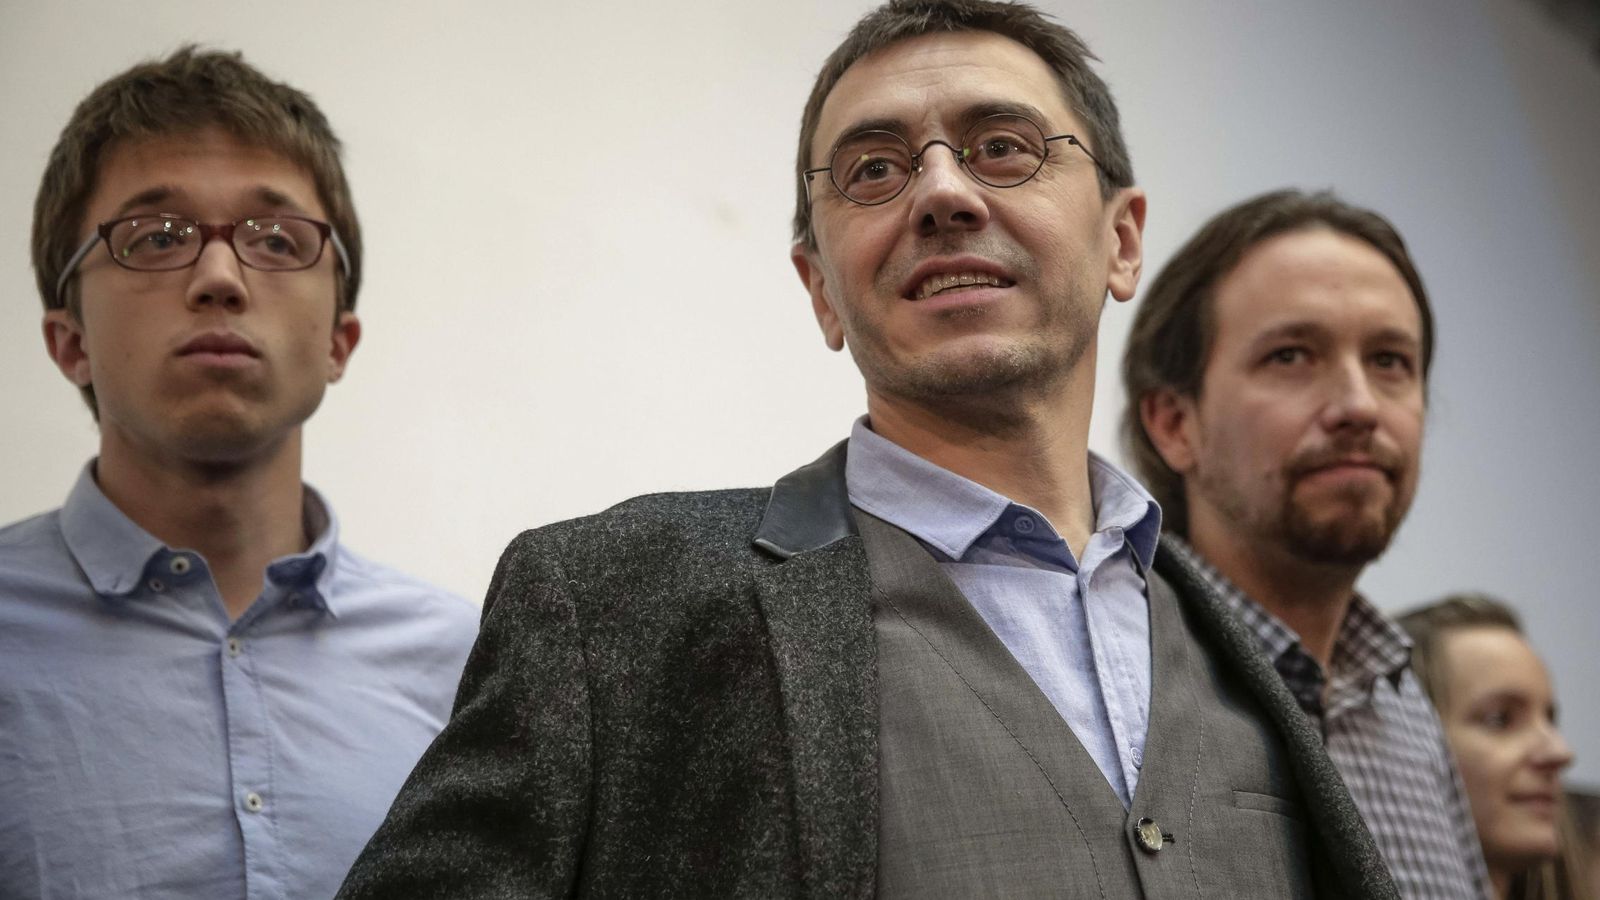 Foto: Íñigo Errejón, Juan Carlos Monedero y Pablo Iglesias, miembros destacados de Podemos. (EFE/Emilio Naranjo)